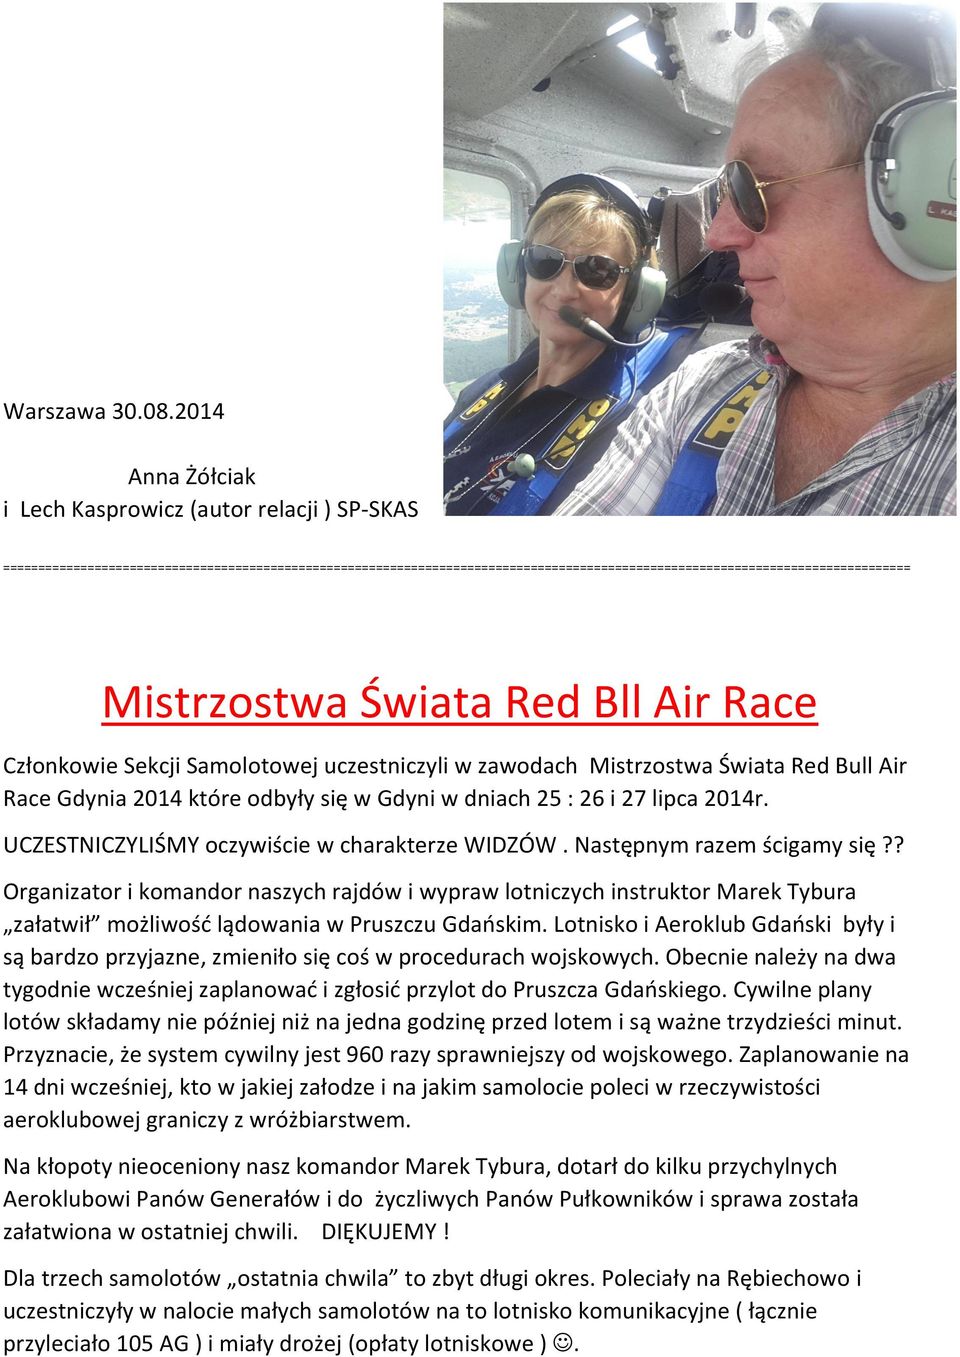 Mistrzostwa Świata Red Bll Air Race Członkowie Sekcji Samolotowej uczestniczyli w zawodach Mistrzostwa Świata Red Bull Air Race Gdynia 2014 które odbyły się w Gdyni w dniach 25 : 26 i 27 lipca 2014r.